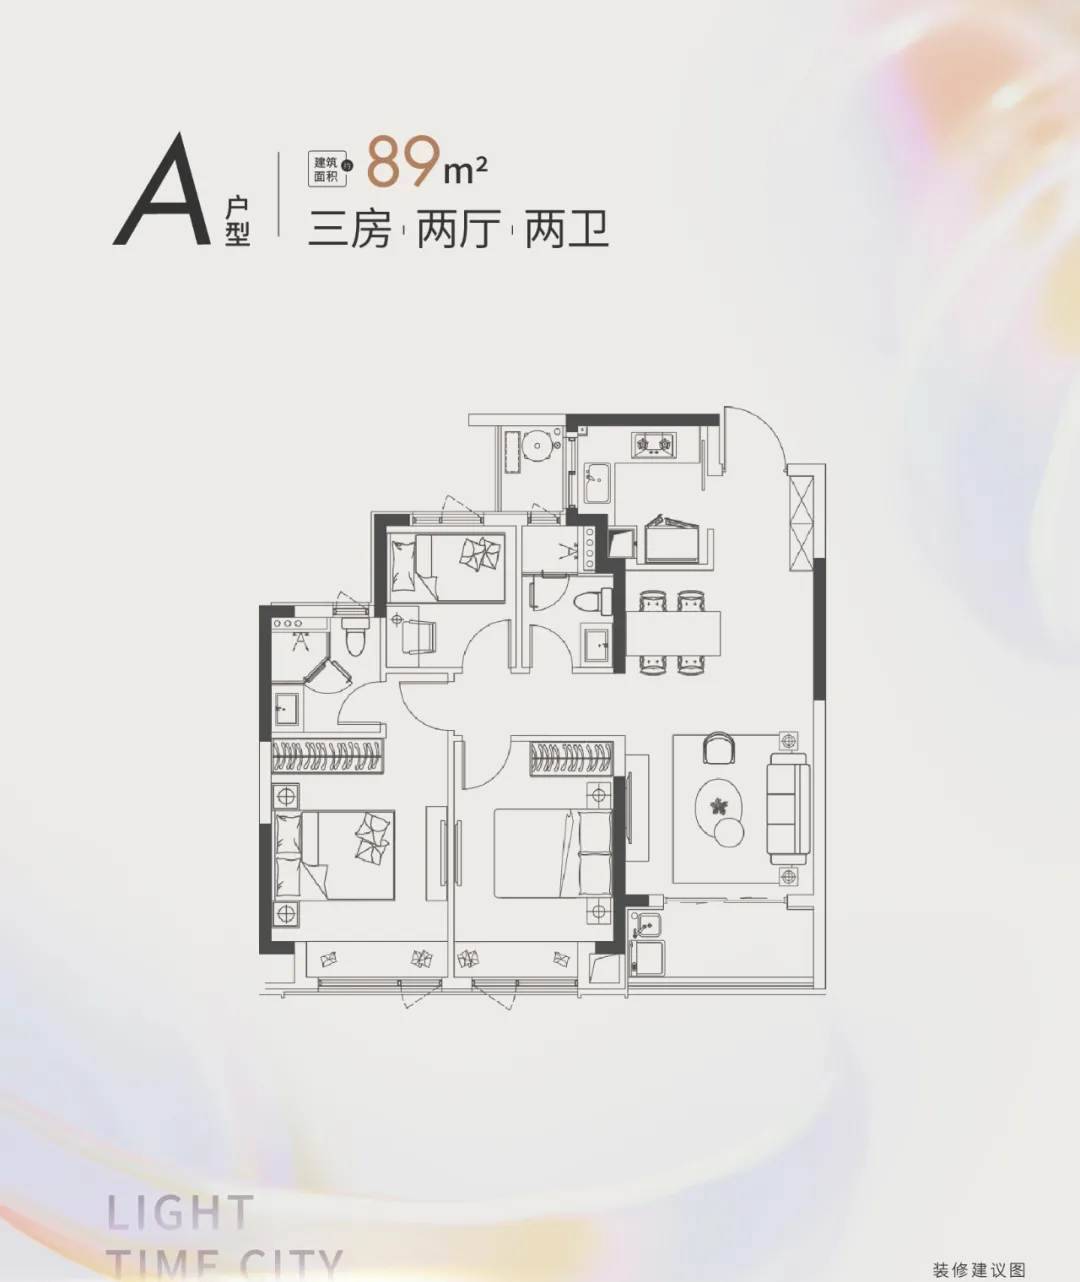 杭州东原·东傲城A-89方-三房两厅两卫